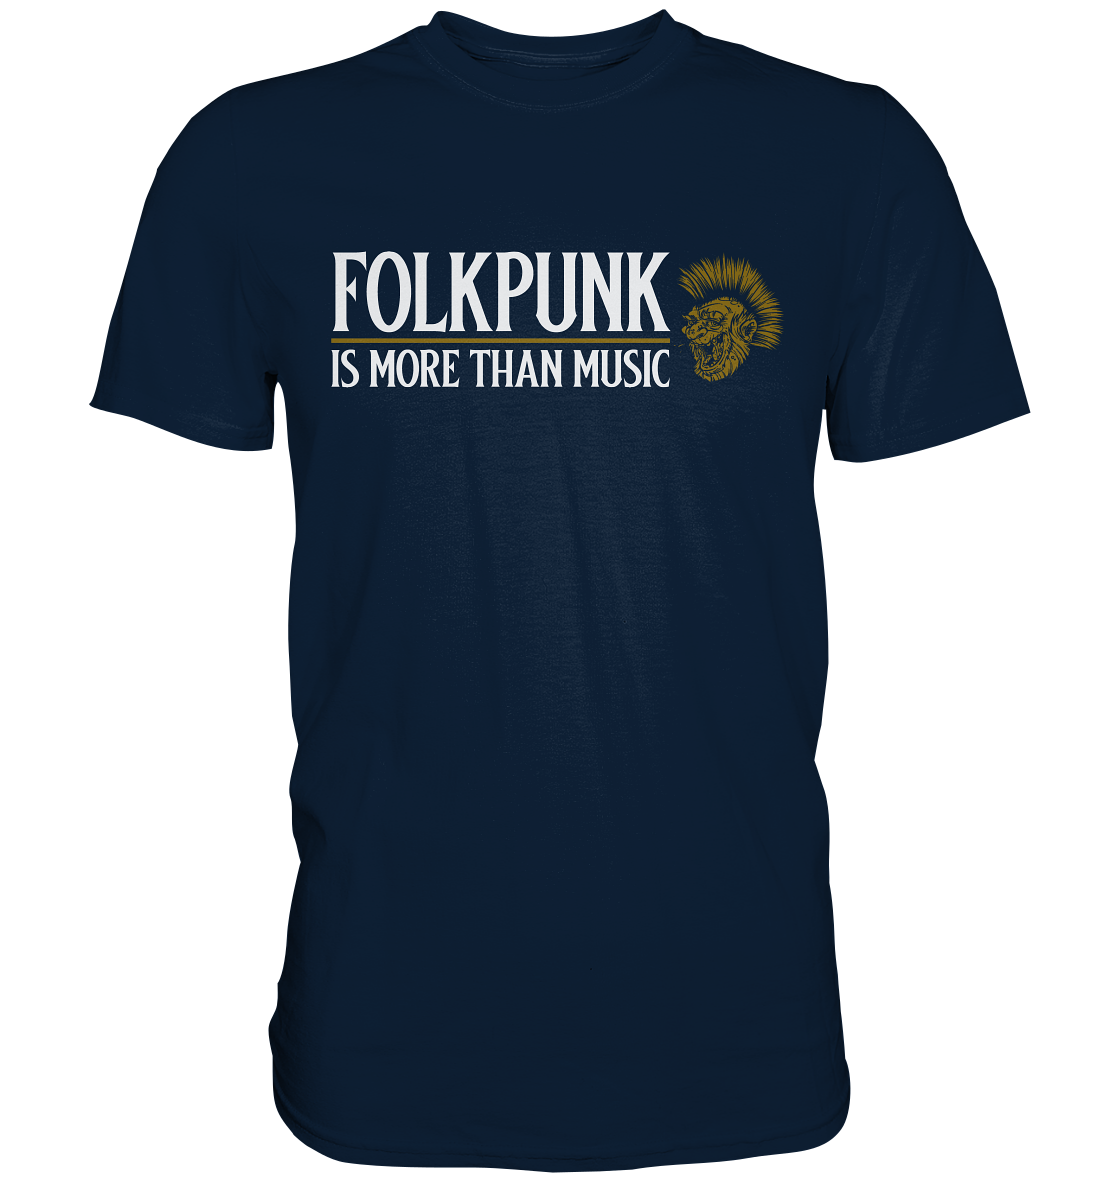 Folkpunk "Is More Than Music" - Premium Shirt